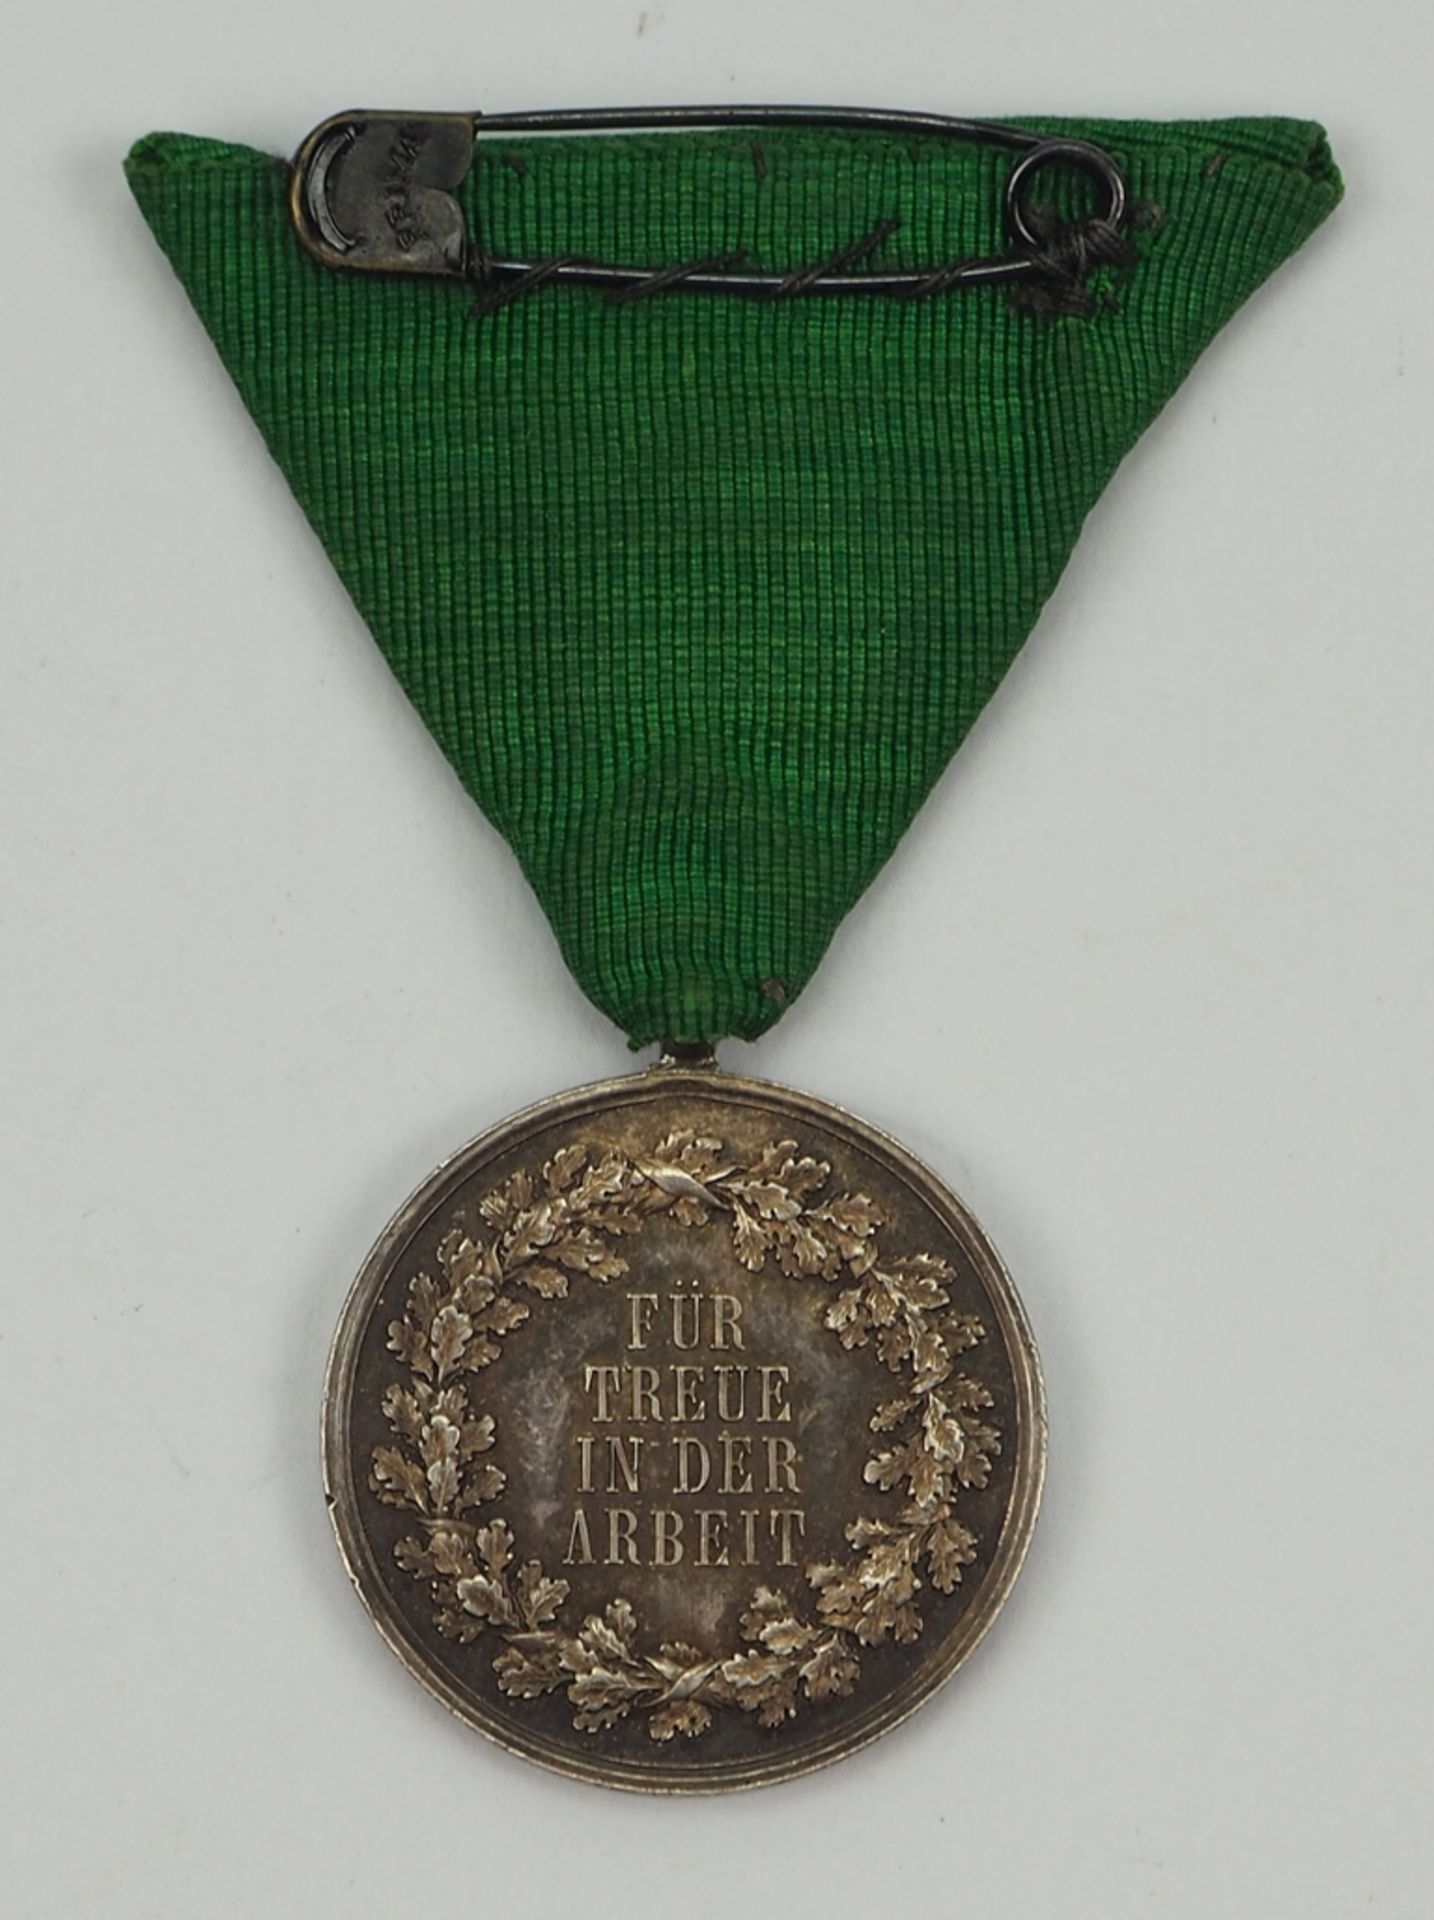 Sachsen: Medaille für Treue in der Arbeit, Friedrich August III. (1905-1918). - Bild 2 aus 2